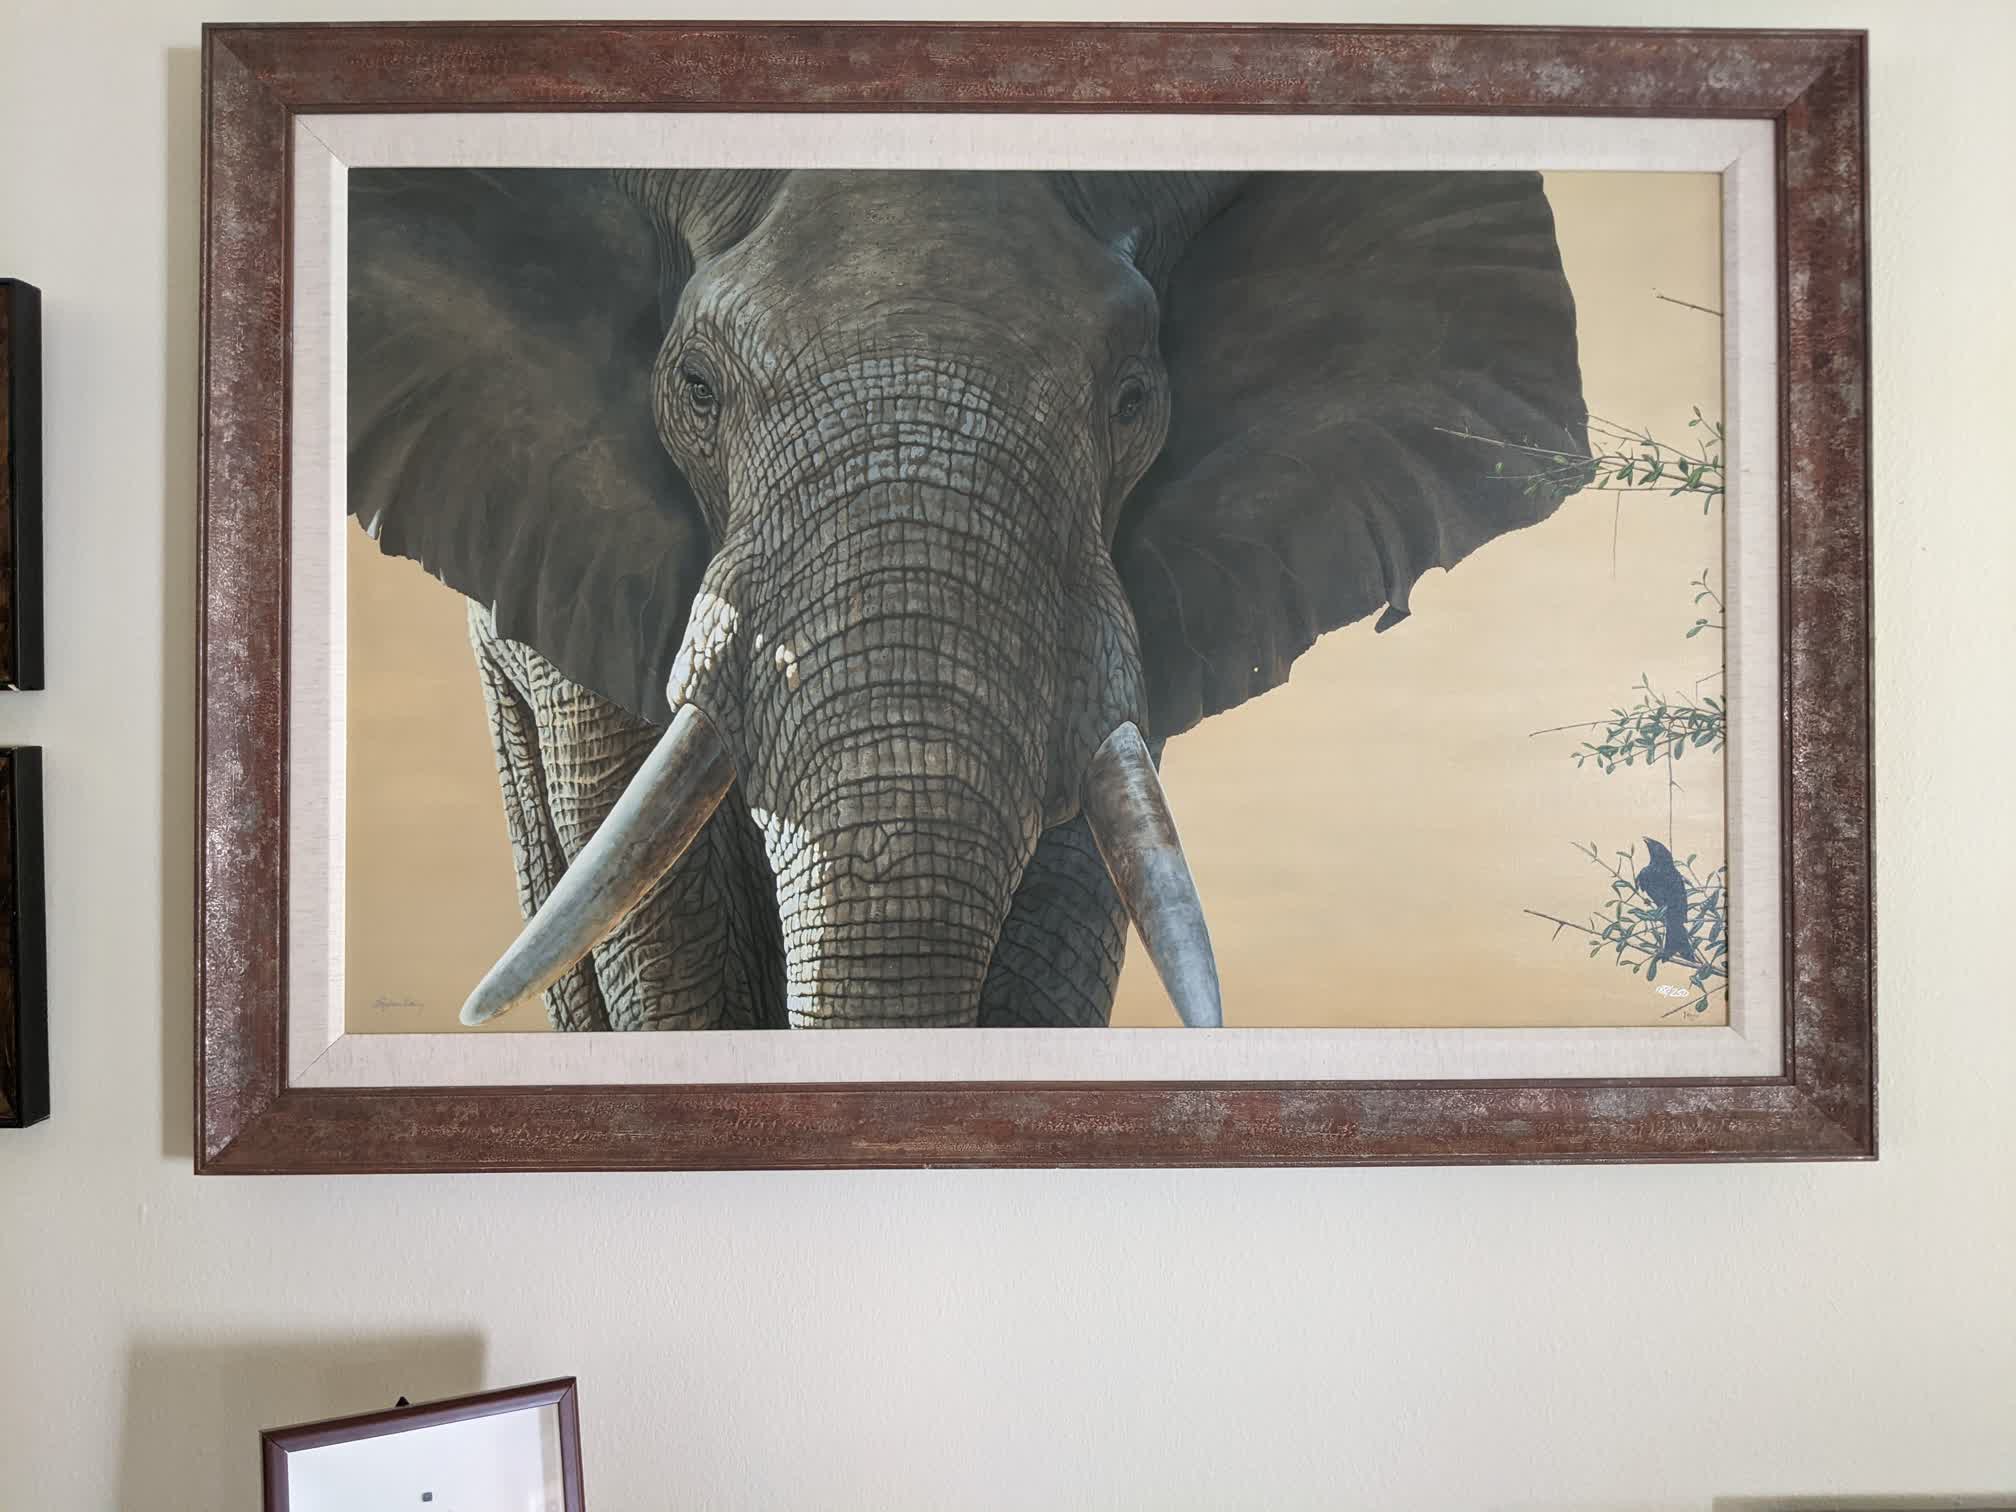 Wisdom the Elephant, displayed in Koury's Studio